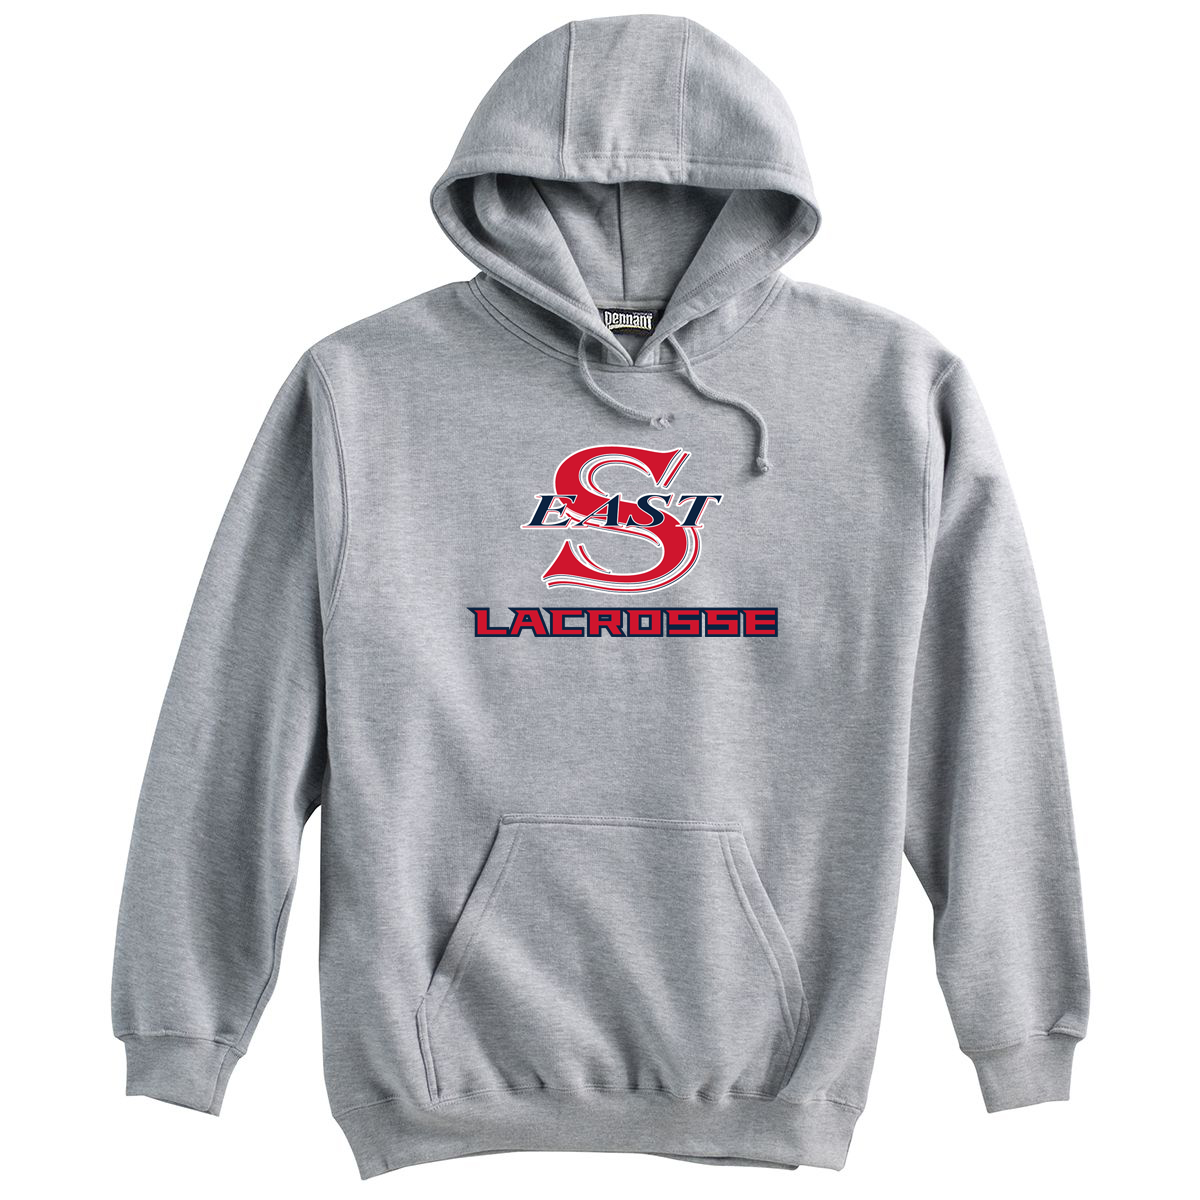 Smithtown East Lacrosse Sweatshirt